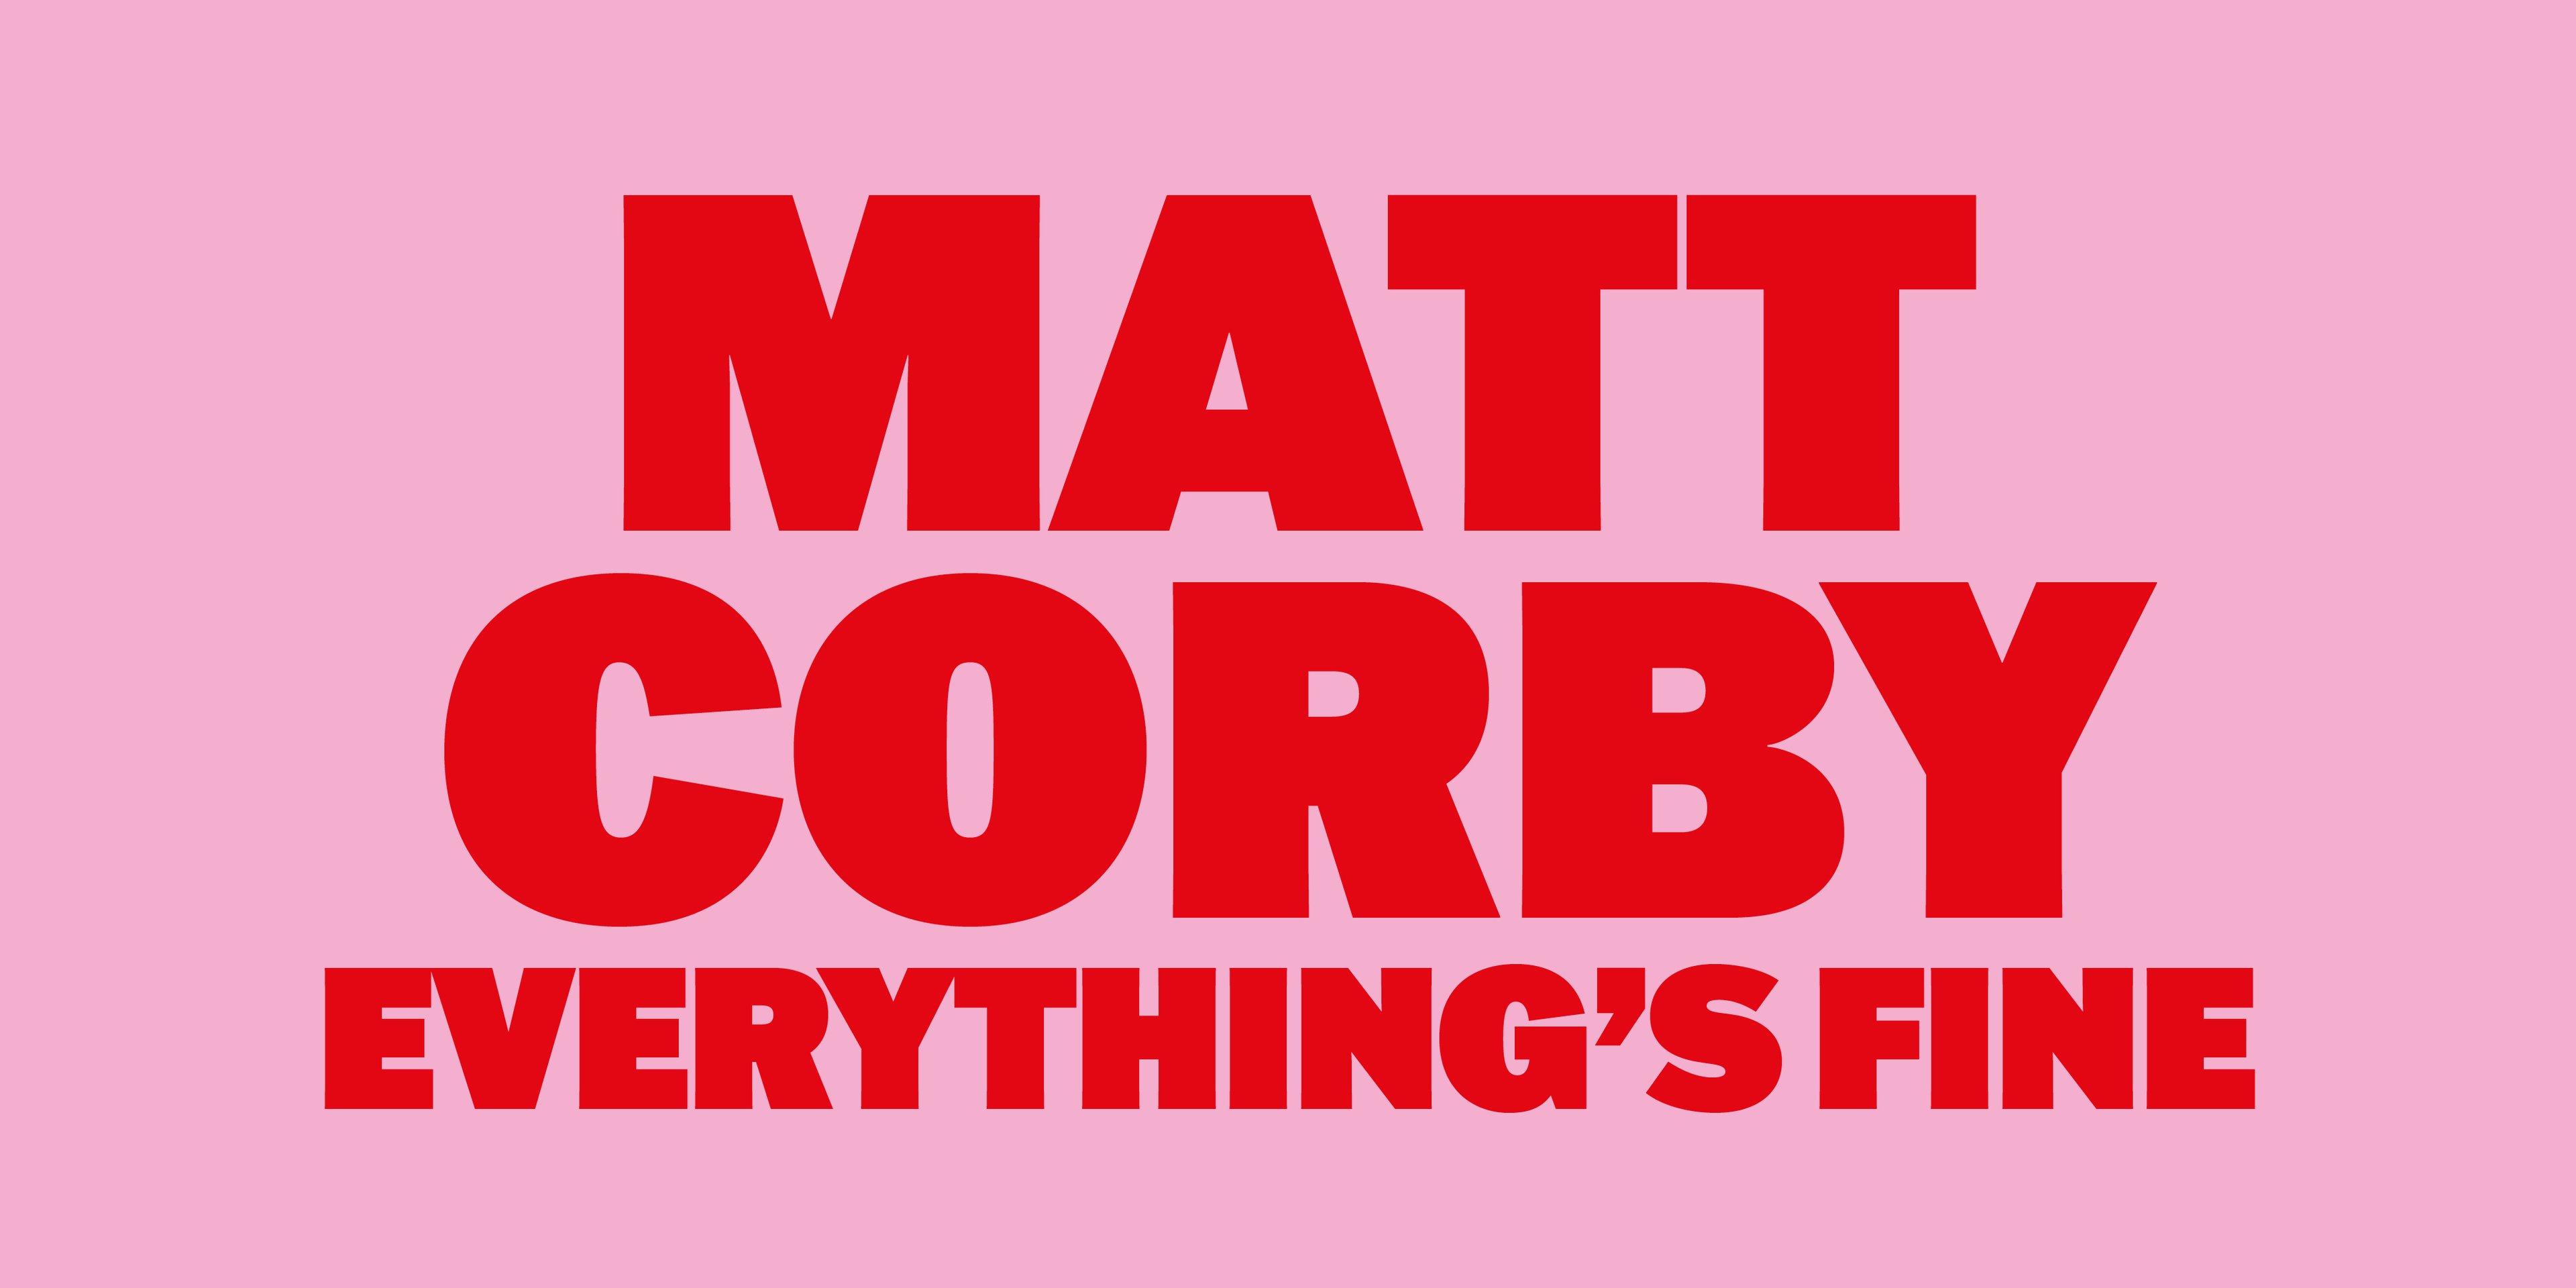 Matt Corby